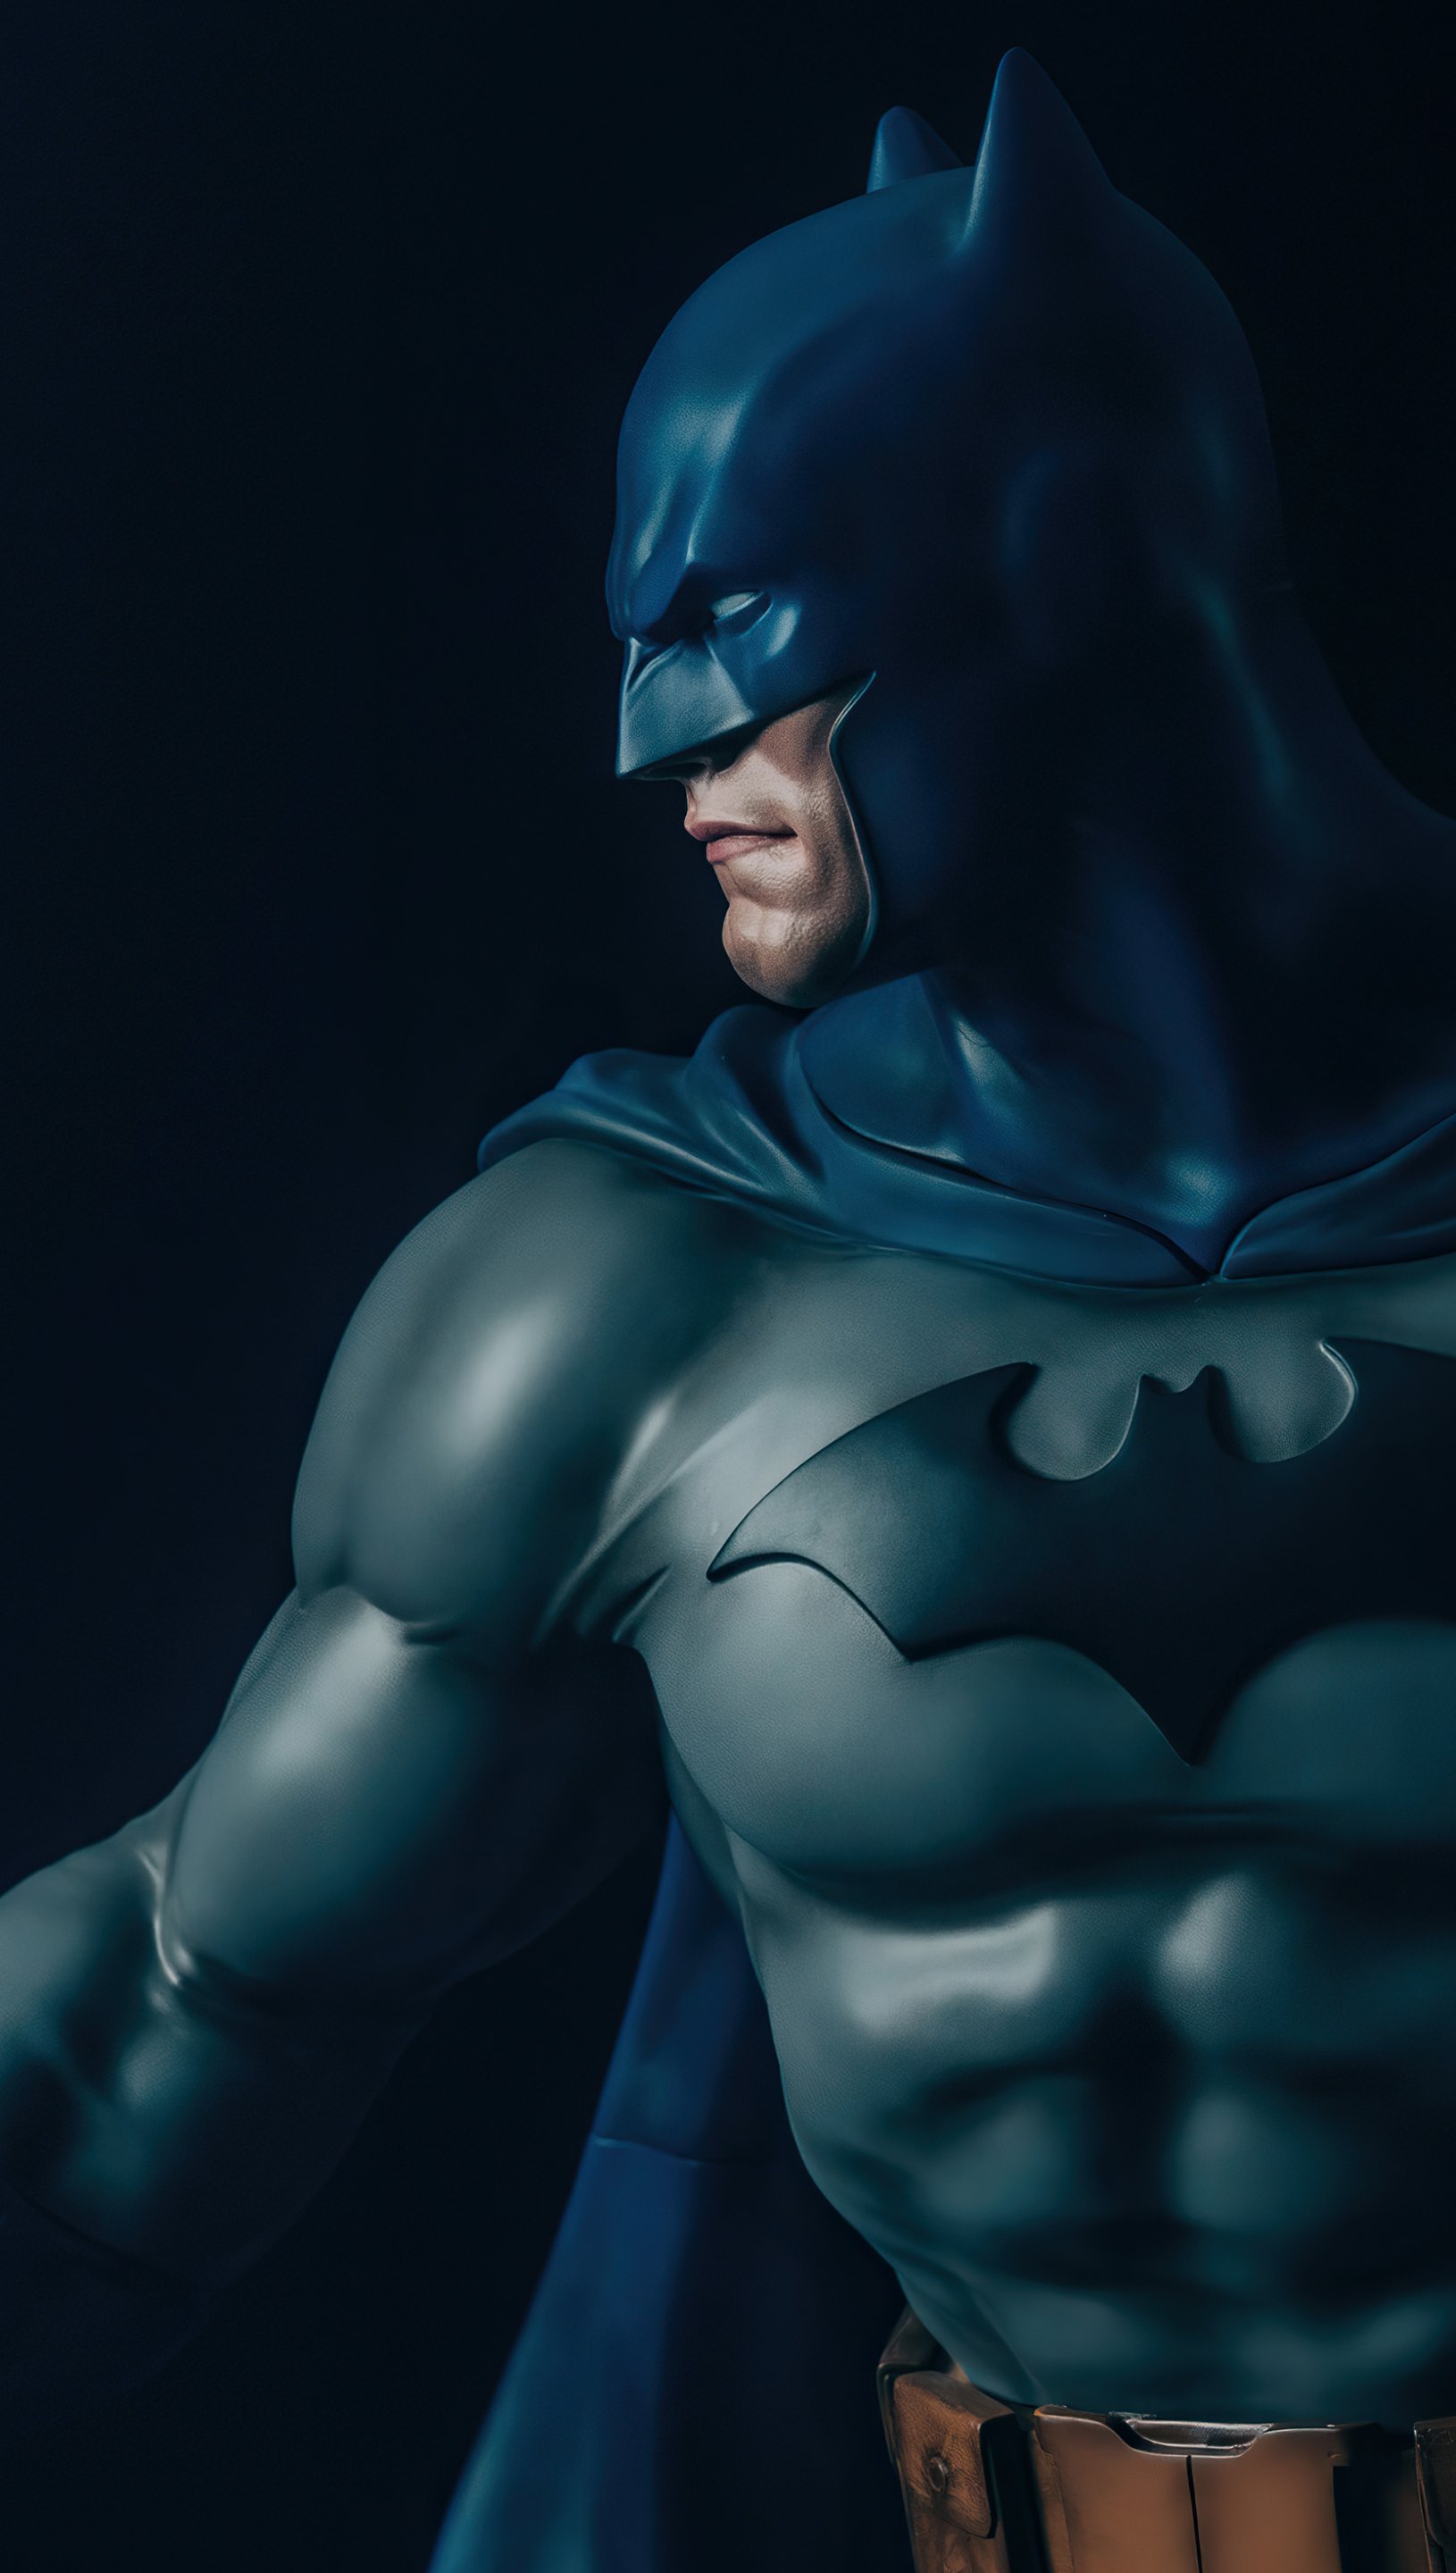 Batman on the side Wallpaper 5k Ultra HD